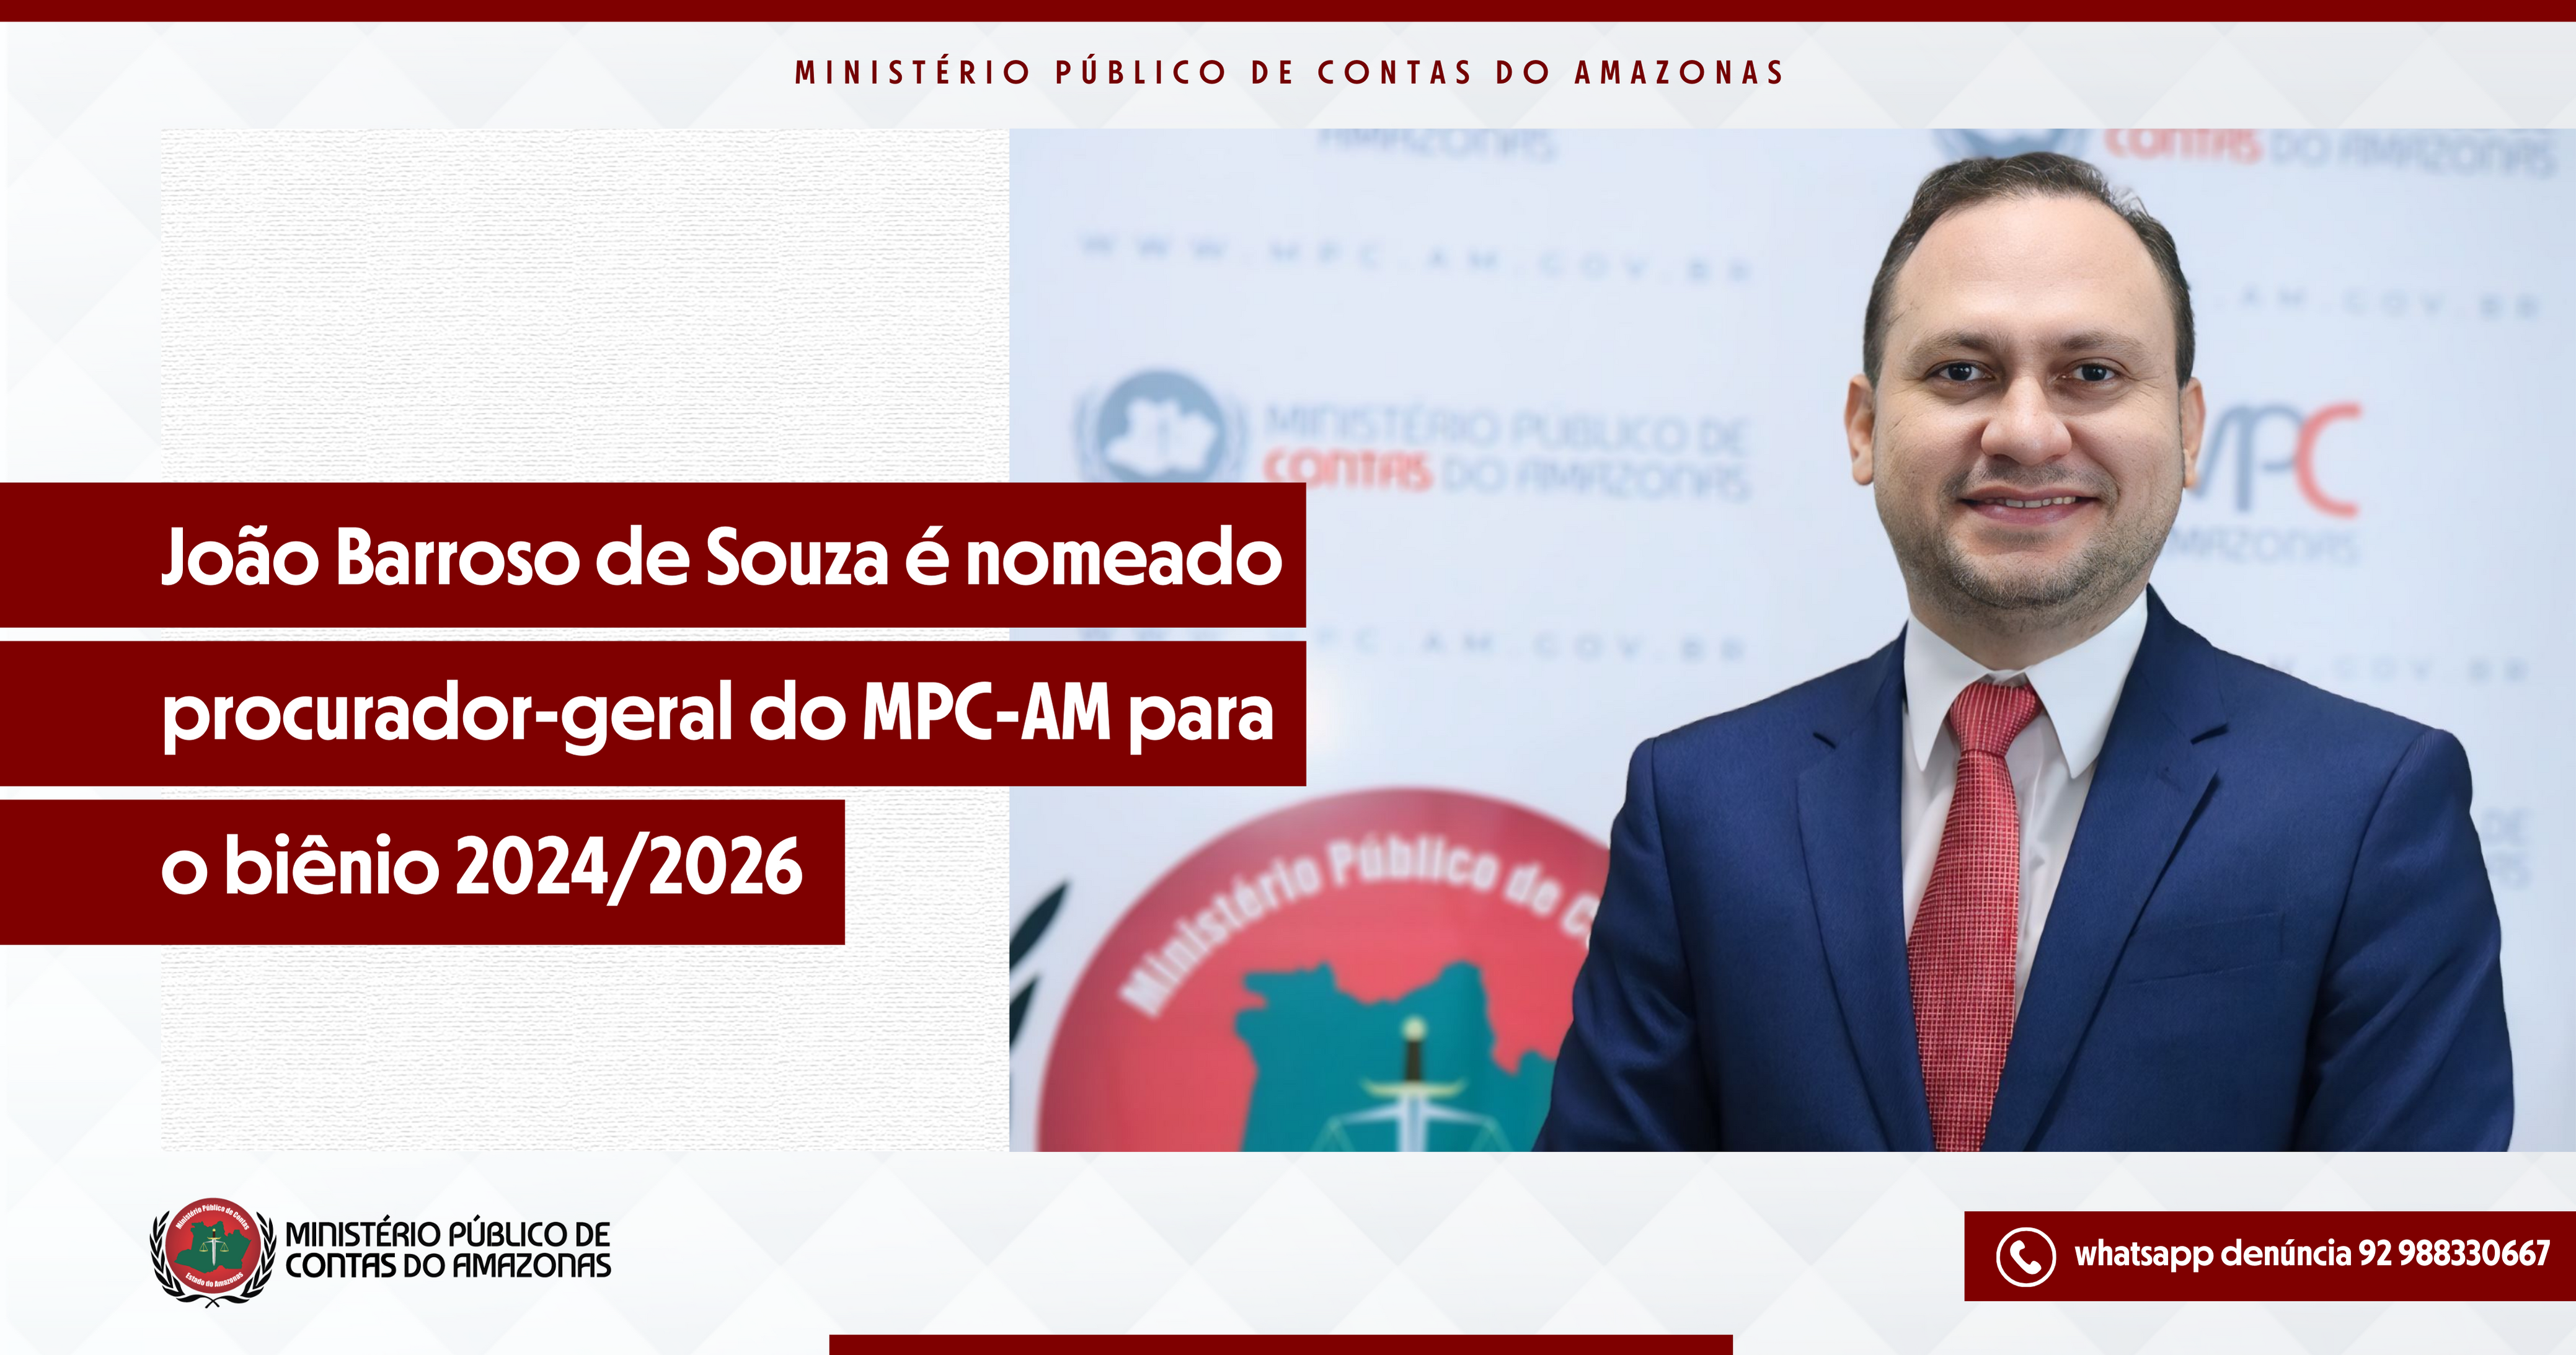 João Barroso de Souza é nomeado procurador-geral do MPC-AM para o biênio 2024/2026